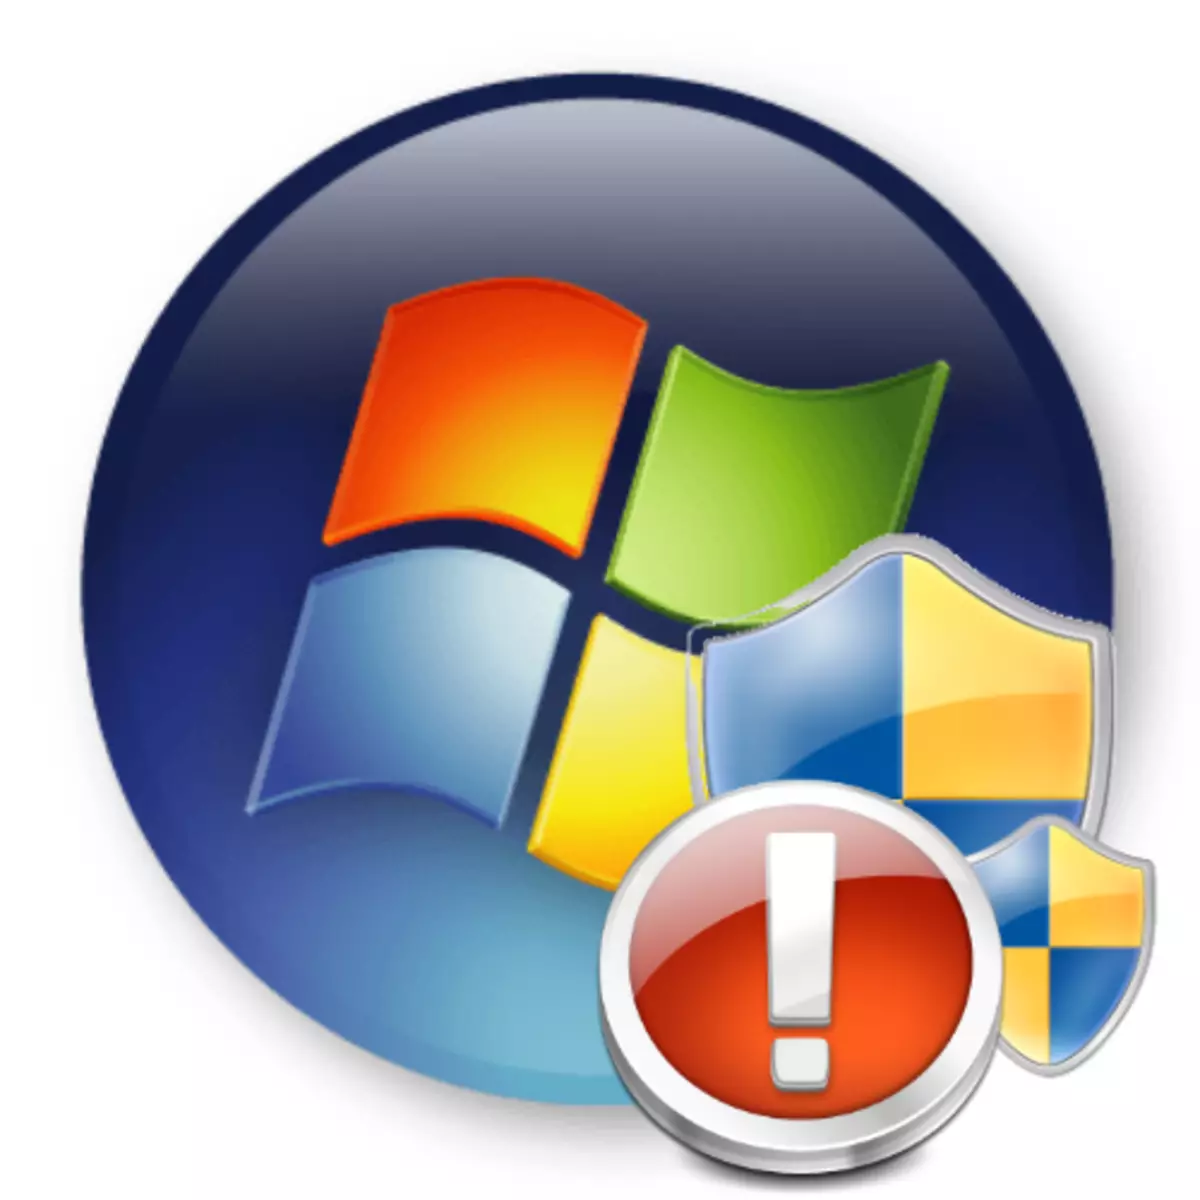 Hitilafu "Operesheni iliyoombwa inahitaji kukuza" katika Windows 7